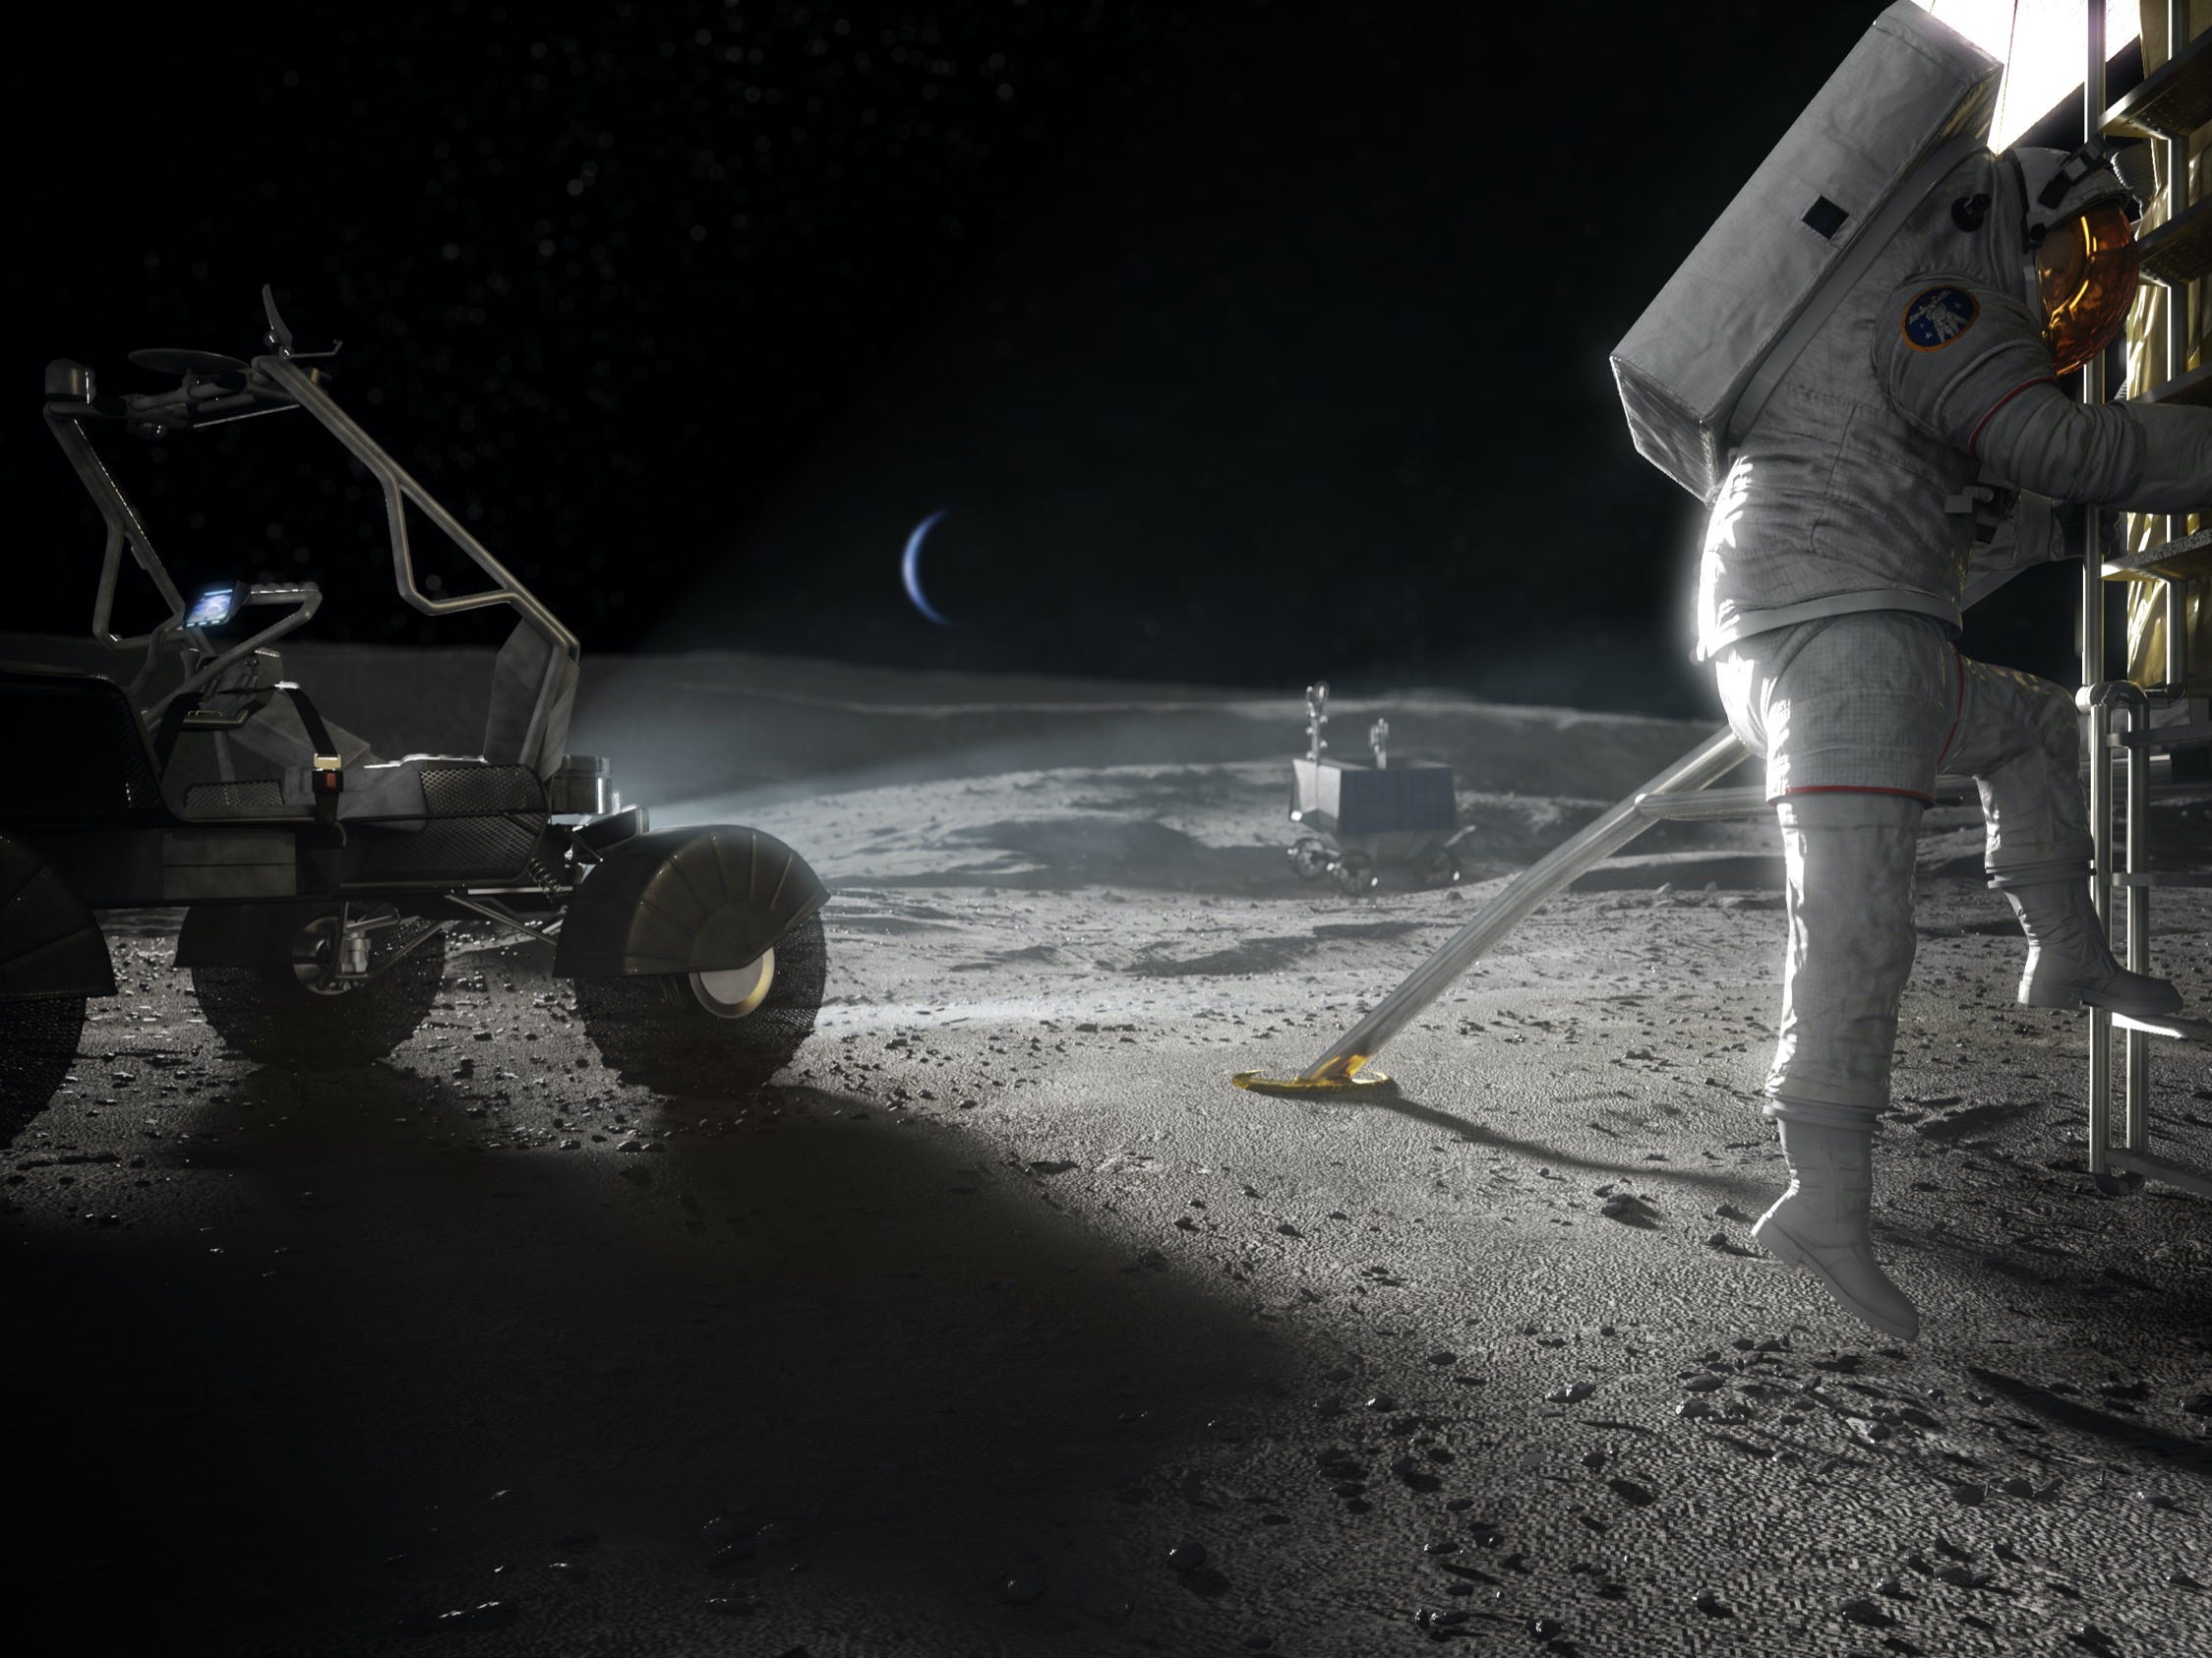 nasa illustration artemis moon lunar surface landing astronaut spacesuit stepping down ladder lander rover hls eva steps apr2020